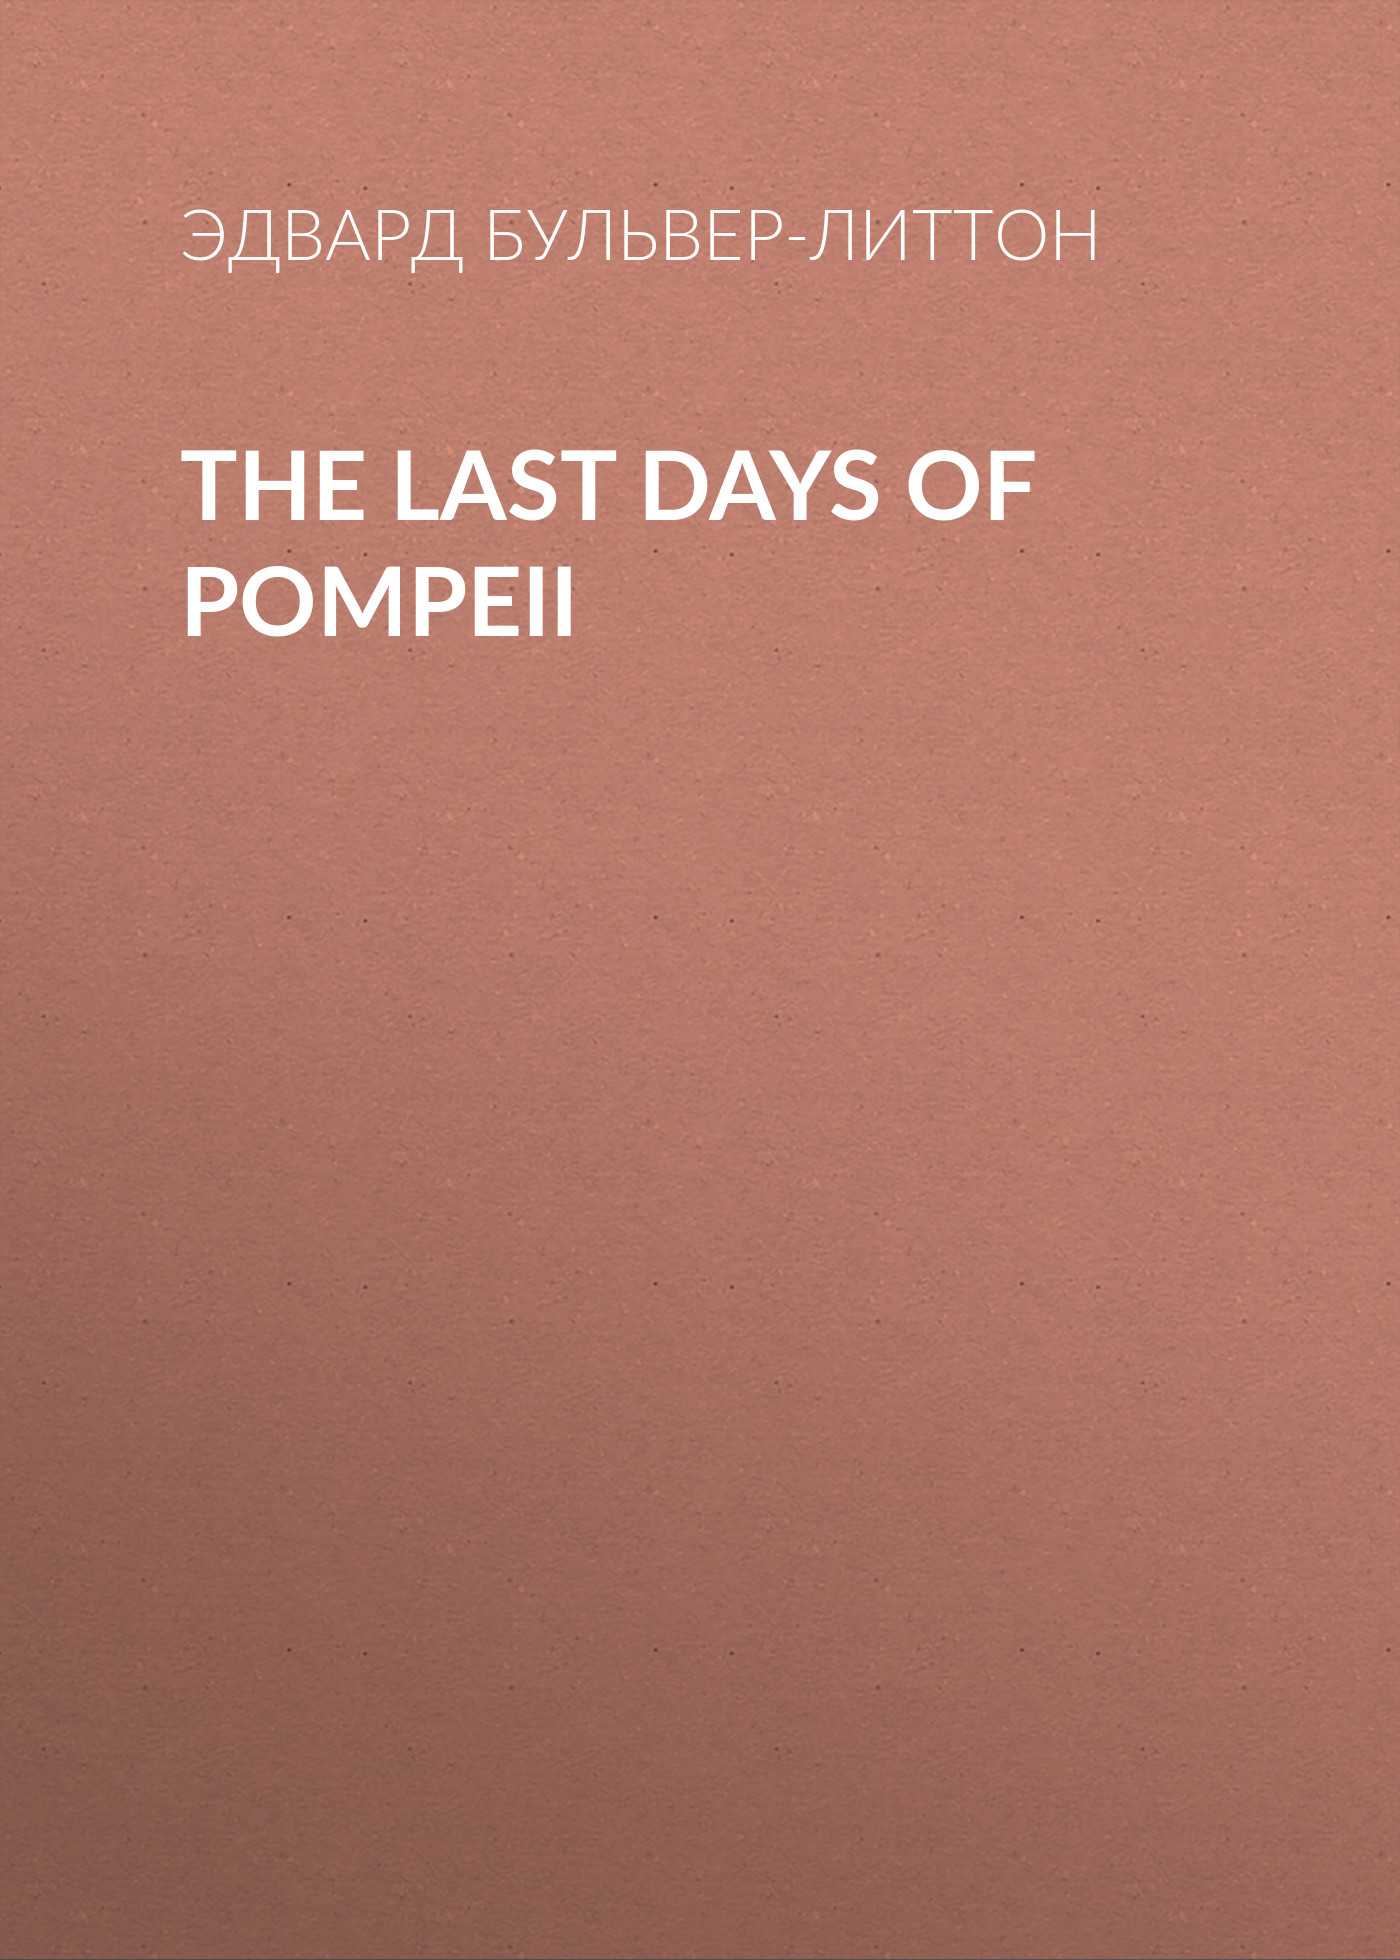 Книга The Last Days of Pompeii из серии , созданная Эдвард Бульвер-Литтон, может относится к жанру Историческая фантастика, Литература 19 века, Зарубежная старинная литература, Зарубежная классика, Исторические приключения. Стоимость электронной книги The Last Days of Pompeii с идентификатором 35007305 составляет 0 руб.